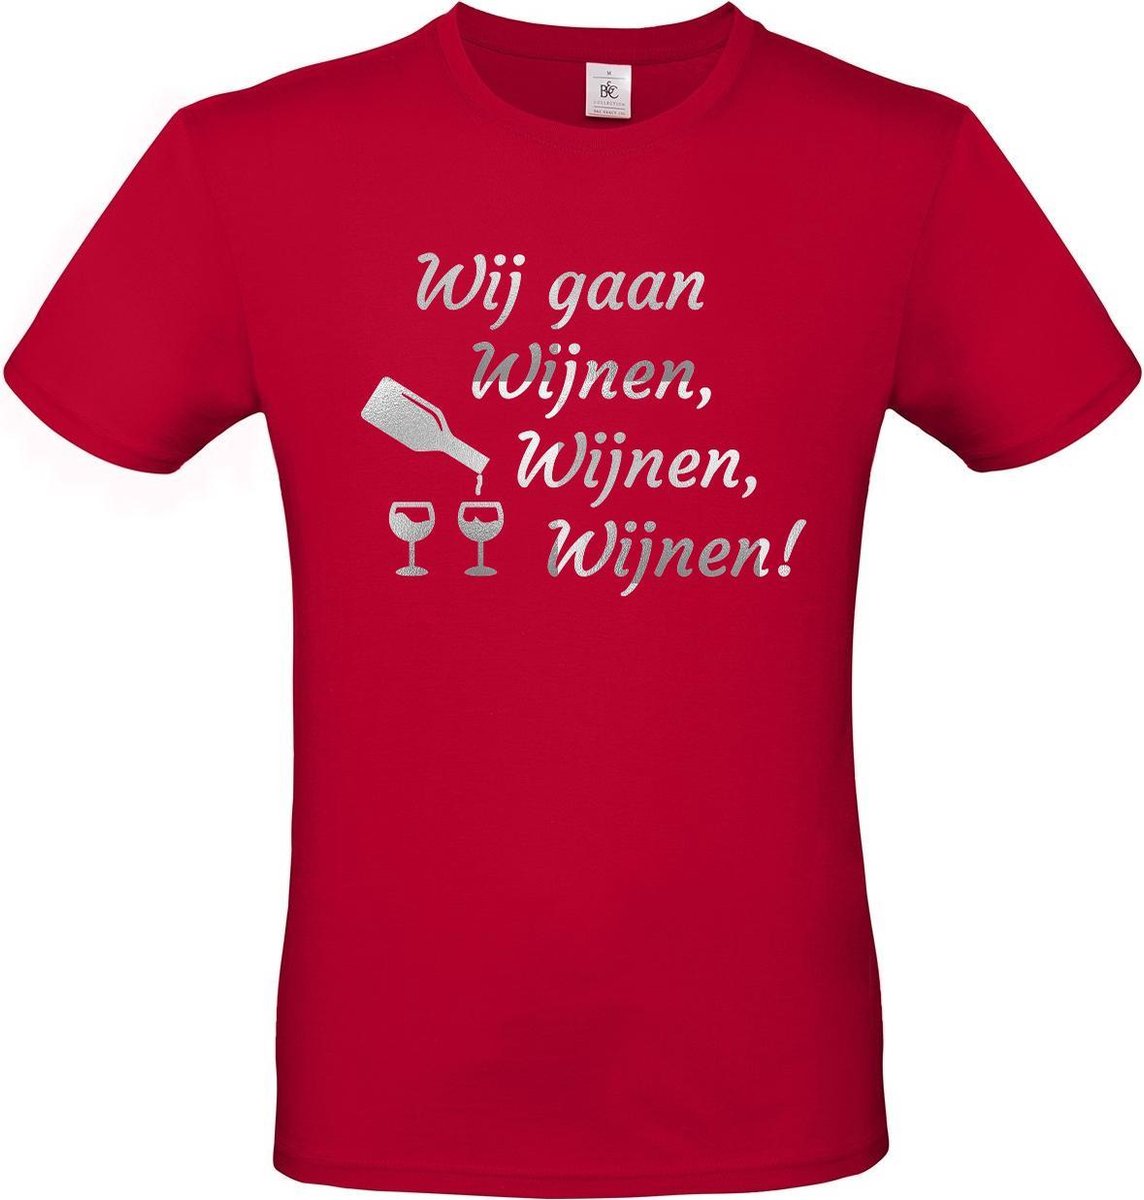 T-shirt met opdruk “Wij gaan Wijnen, wijnen, wijnen!” | Meiland collectie | Rood T-shirt met zilverkleurige opdruk. | Herojodeals